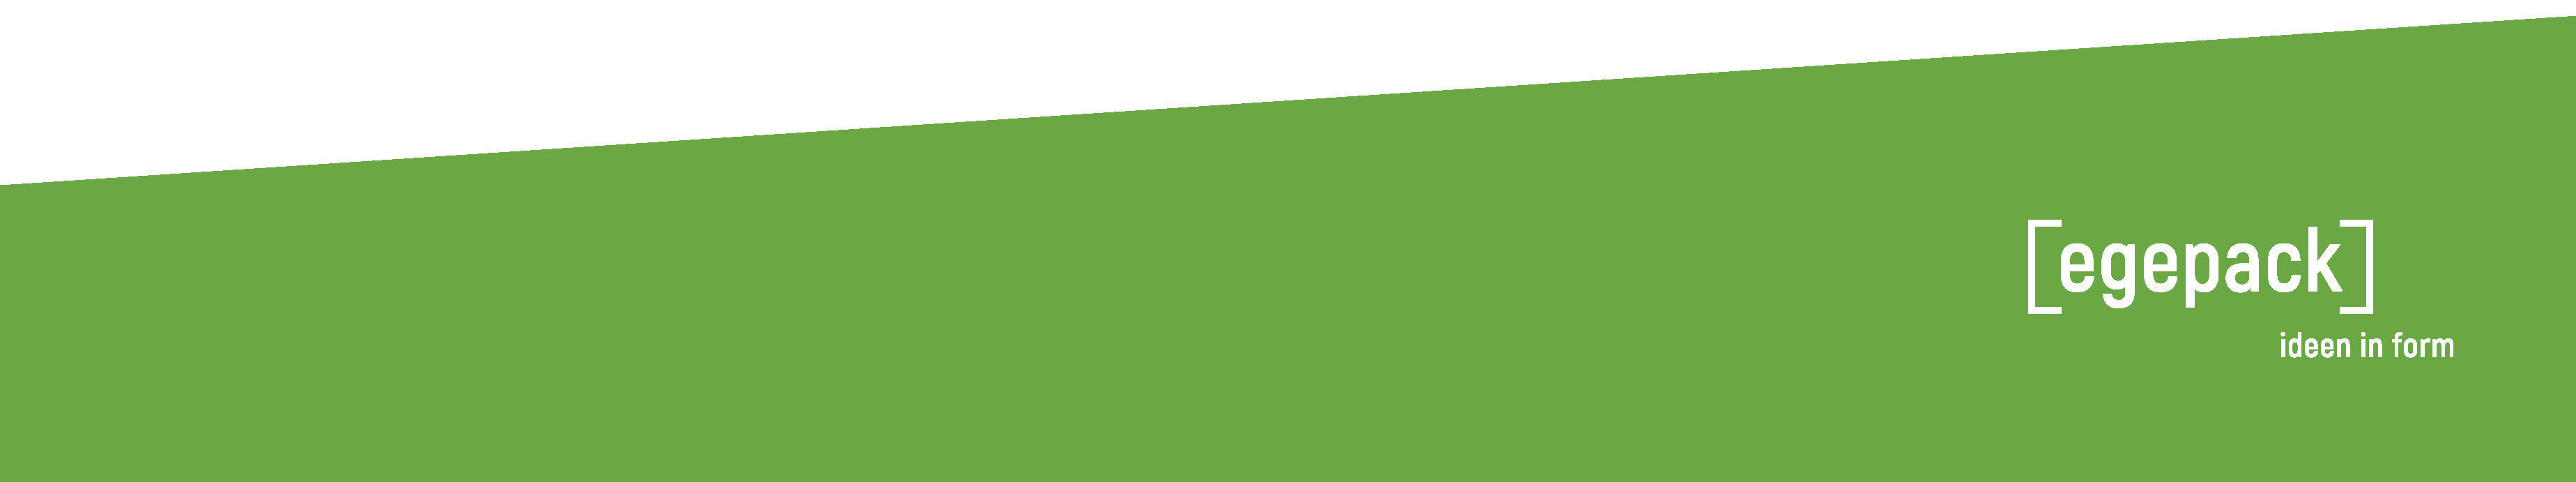 Seitenende: Eine von links nach rechts schräg größer werdende grüne Fläche. Auf dem grünen Hintergrund in weiß das Logo [egepack] ideen in form.